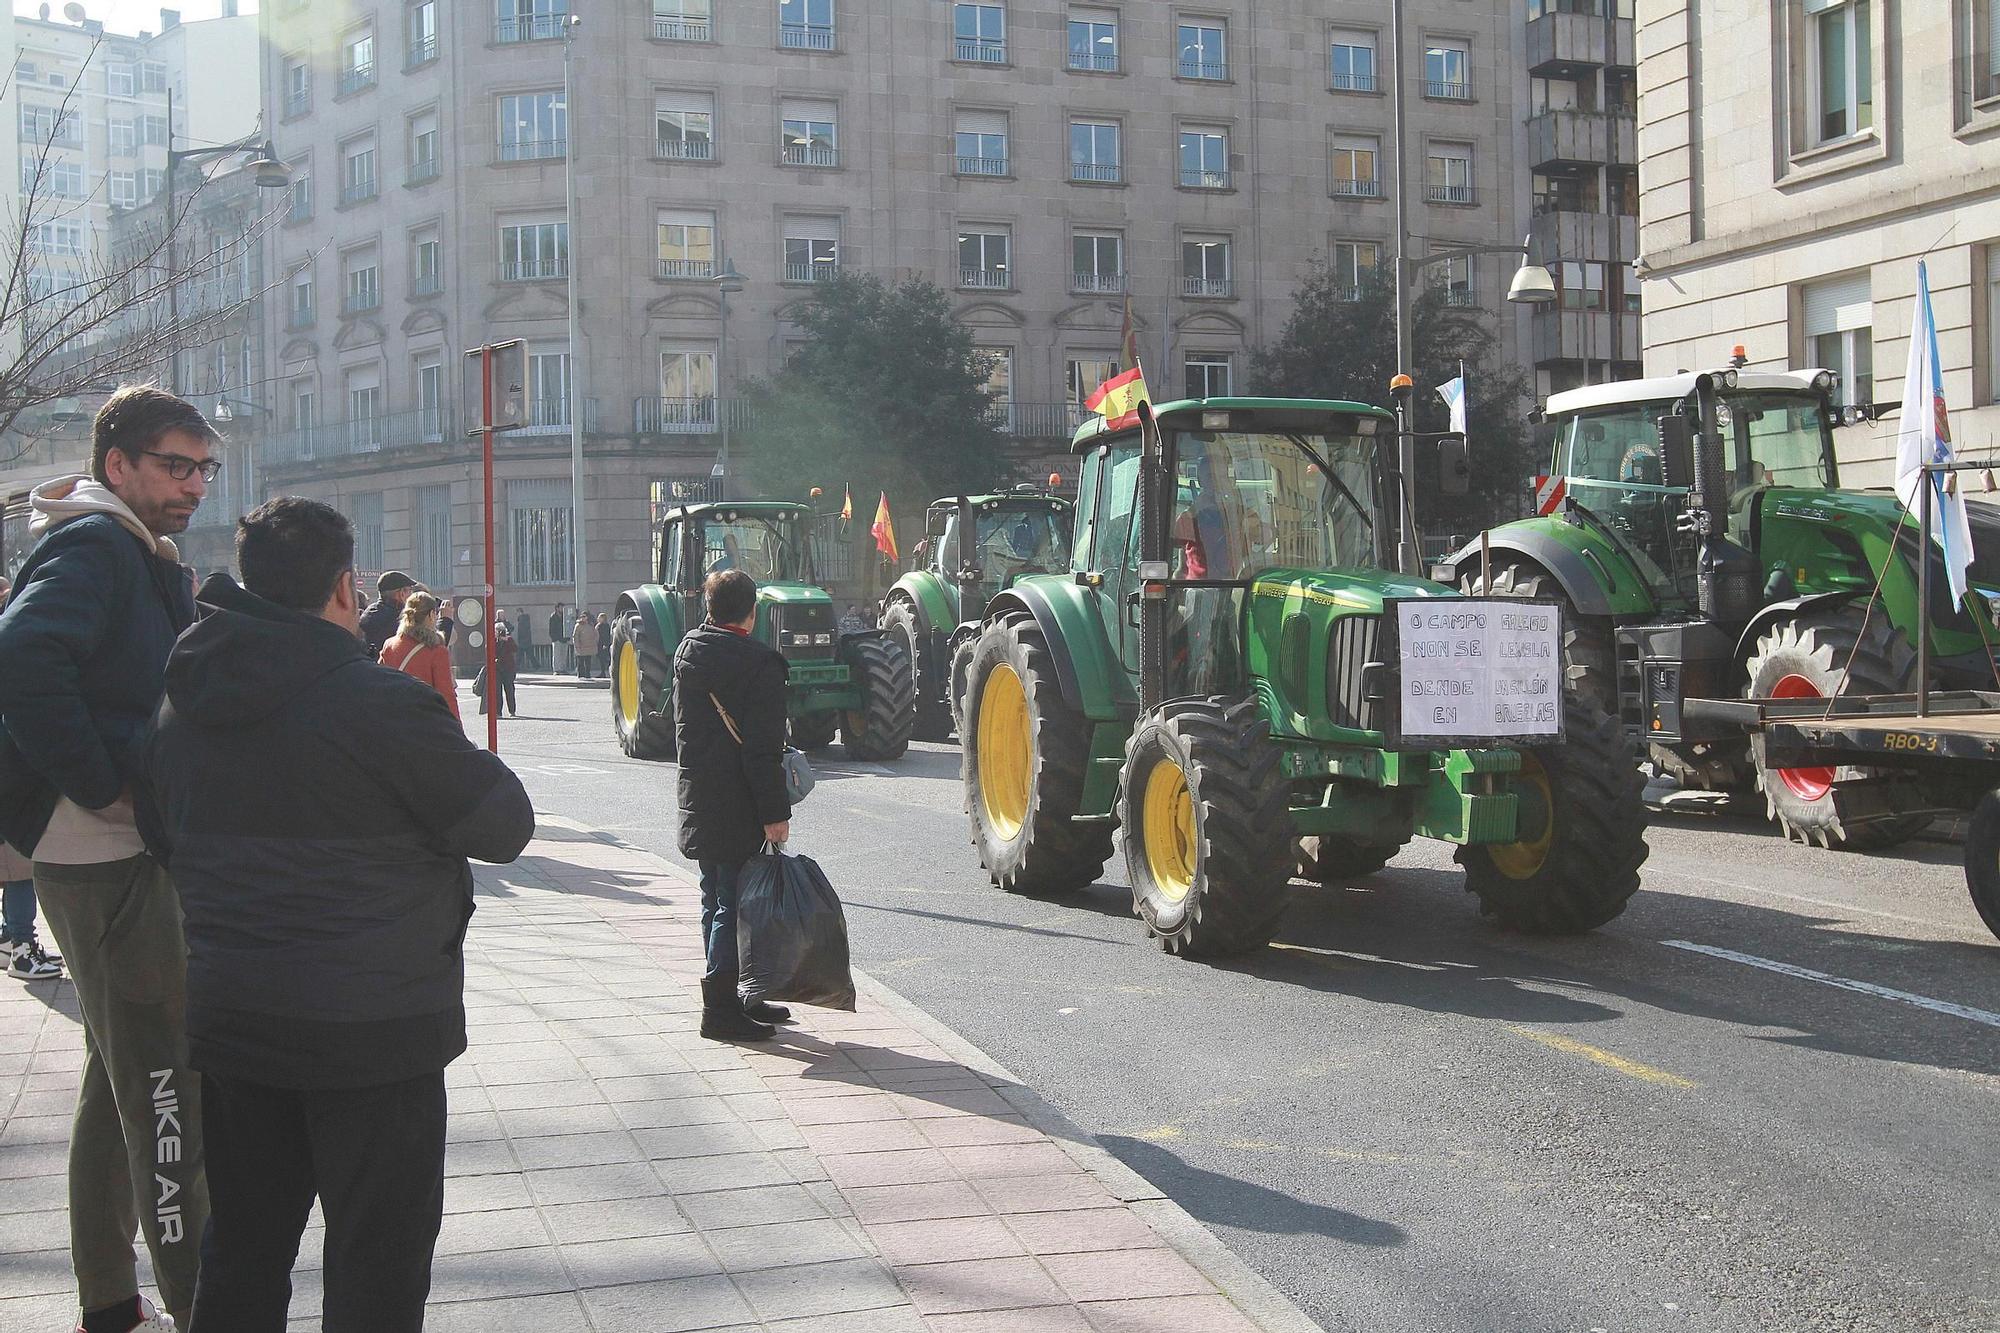 Tractorada en Ourense: doscientos vehículos agrícolas colapsan la ciudad en protesta contra las medidas de la UE